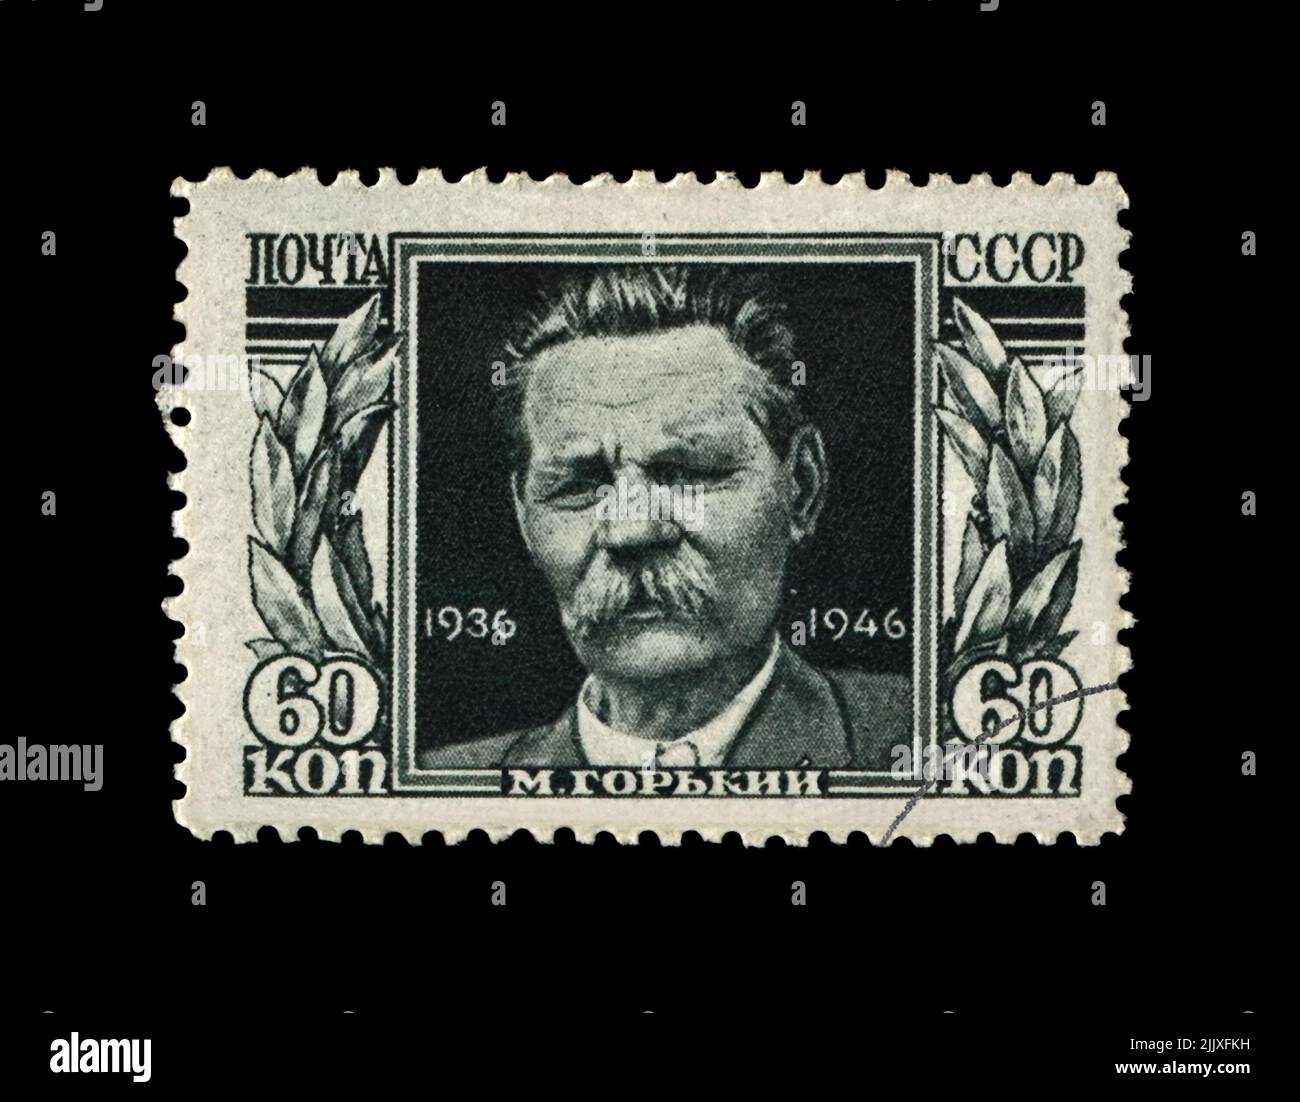 Maxim Gorki aka Alexei Maximovich Peschkow (1868-1936), berühmter russischer Schriftsteller, Dramatiker, Politiker, um 1946. Abgesagte Briefmarke gedruckt in der UdSSR Stockfoto